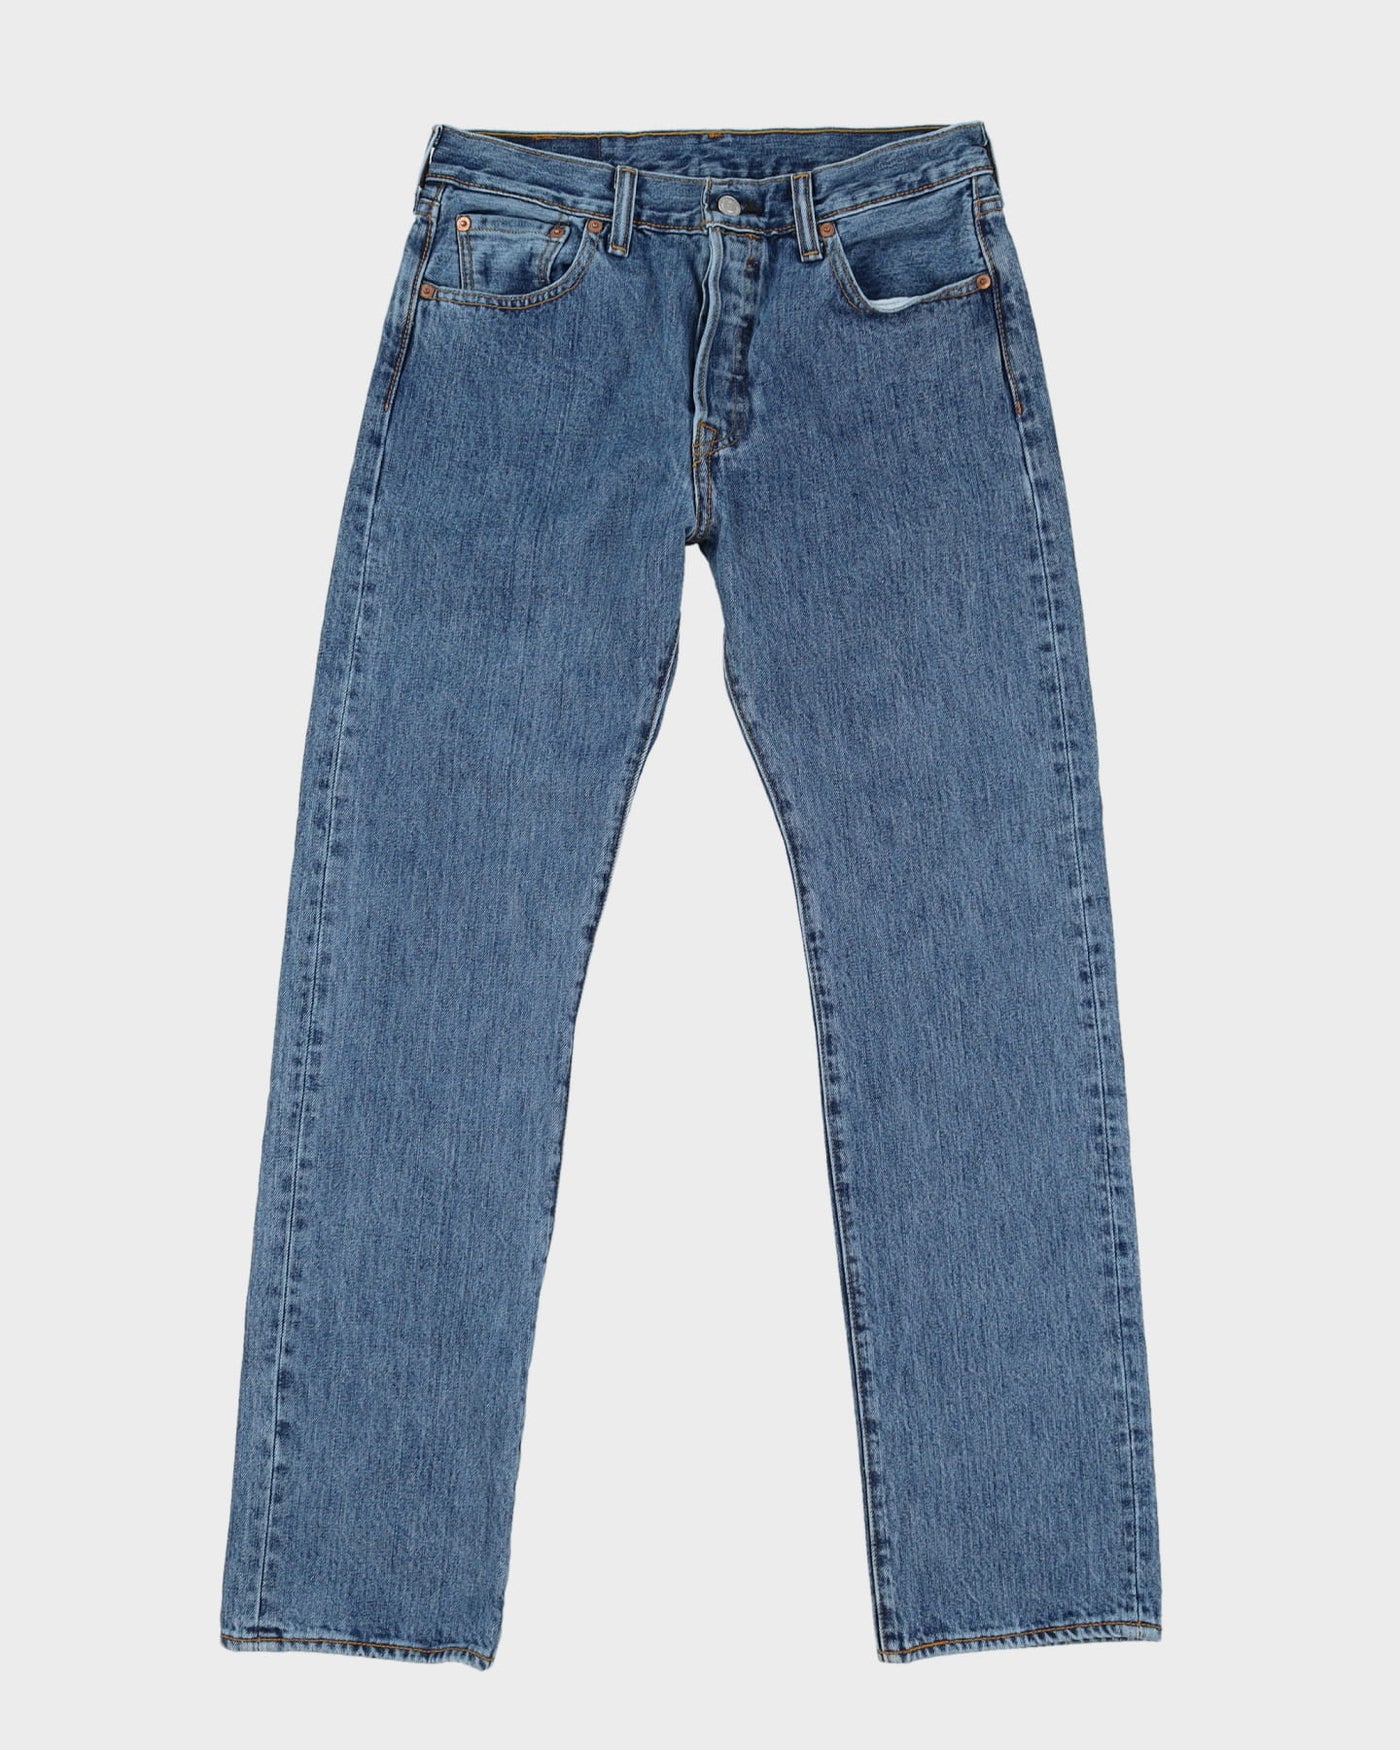 Levi's 501 Medium Wash Jeans - W30 L31